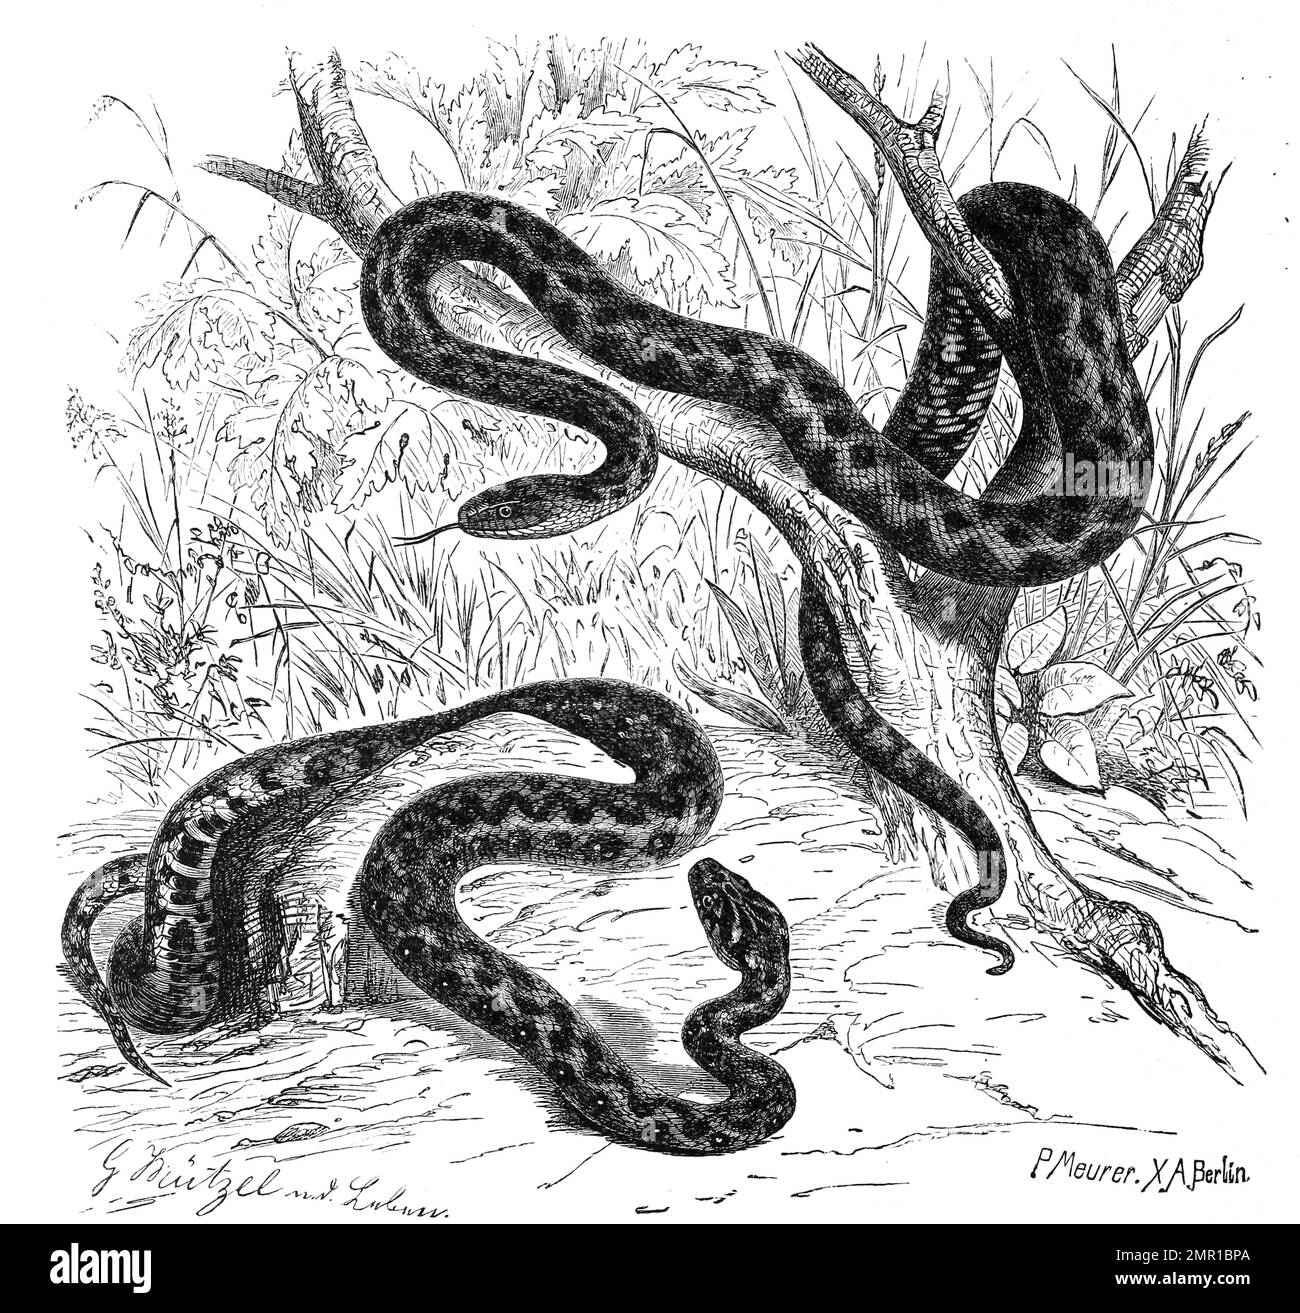 Reptilien, Würfelnatter, Natrix tessellata ist eine ungiftige, für den Menschen harmlose eurasische Schlange aus der Familie der Nattern und Vipernatter, Vipernatter, Natrix maura, auch Vipernnatter, Historisch, Digital restaurierte Reproduktion von einer Vorlage aus dem 19. Jahrhundert Banque D'Images